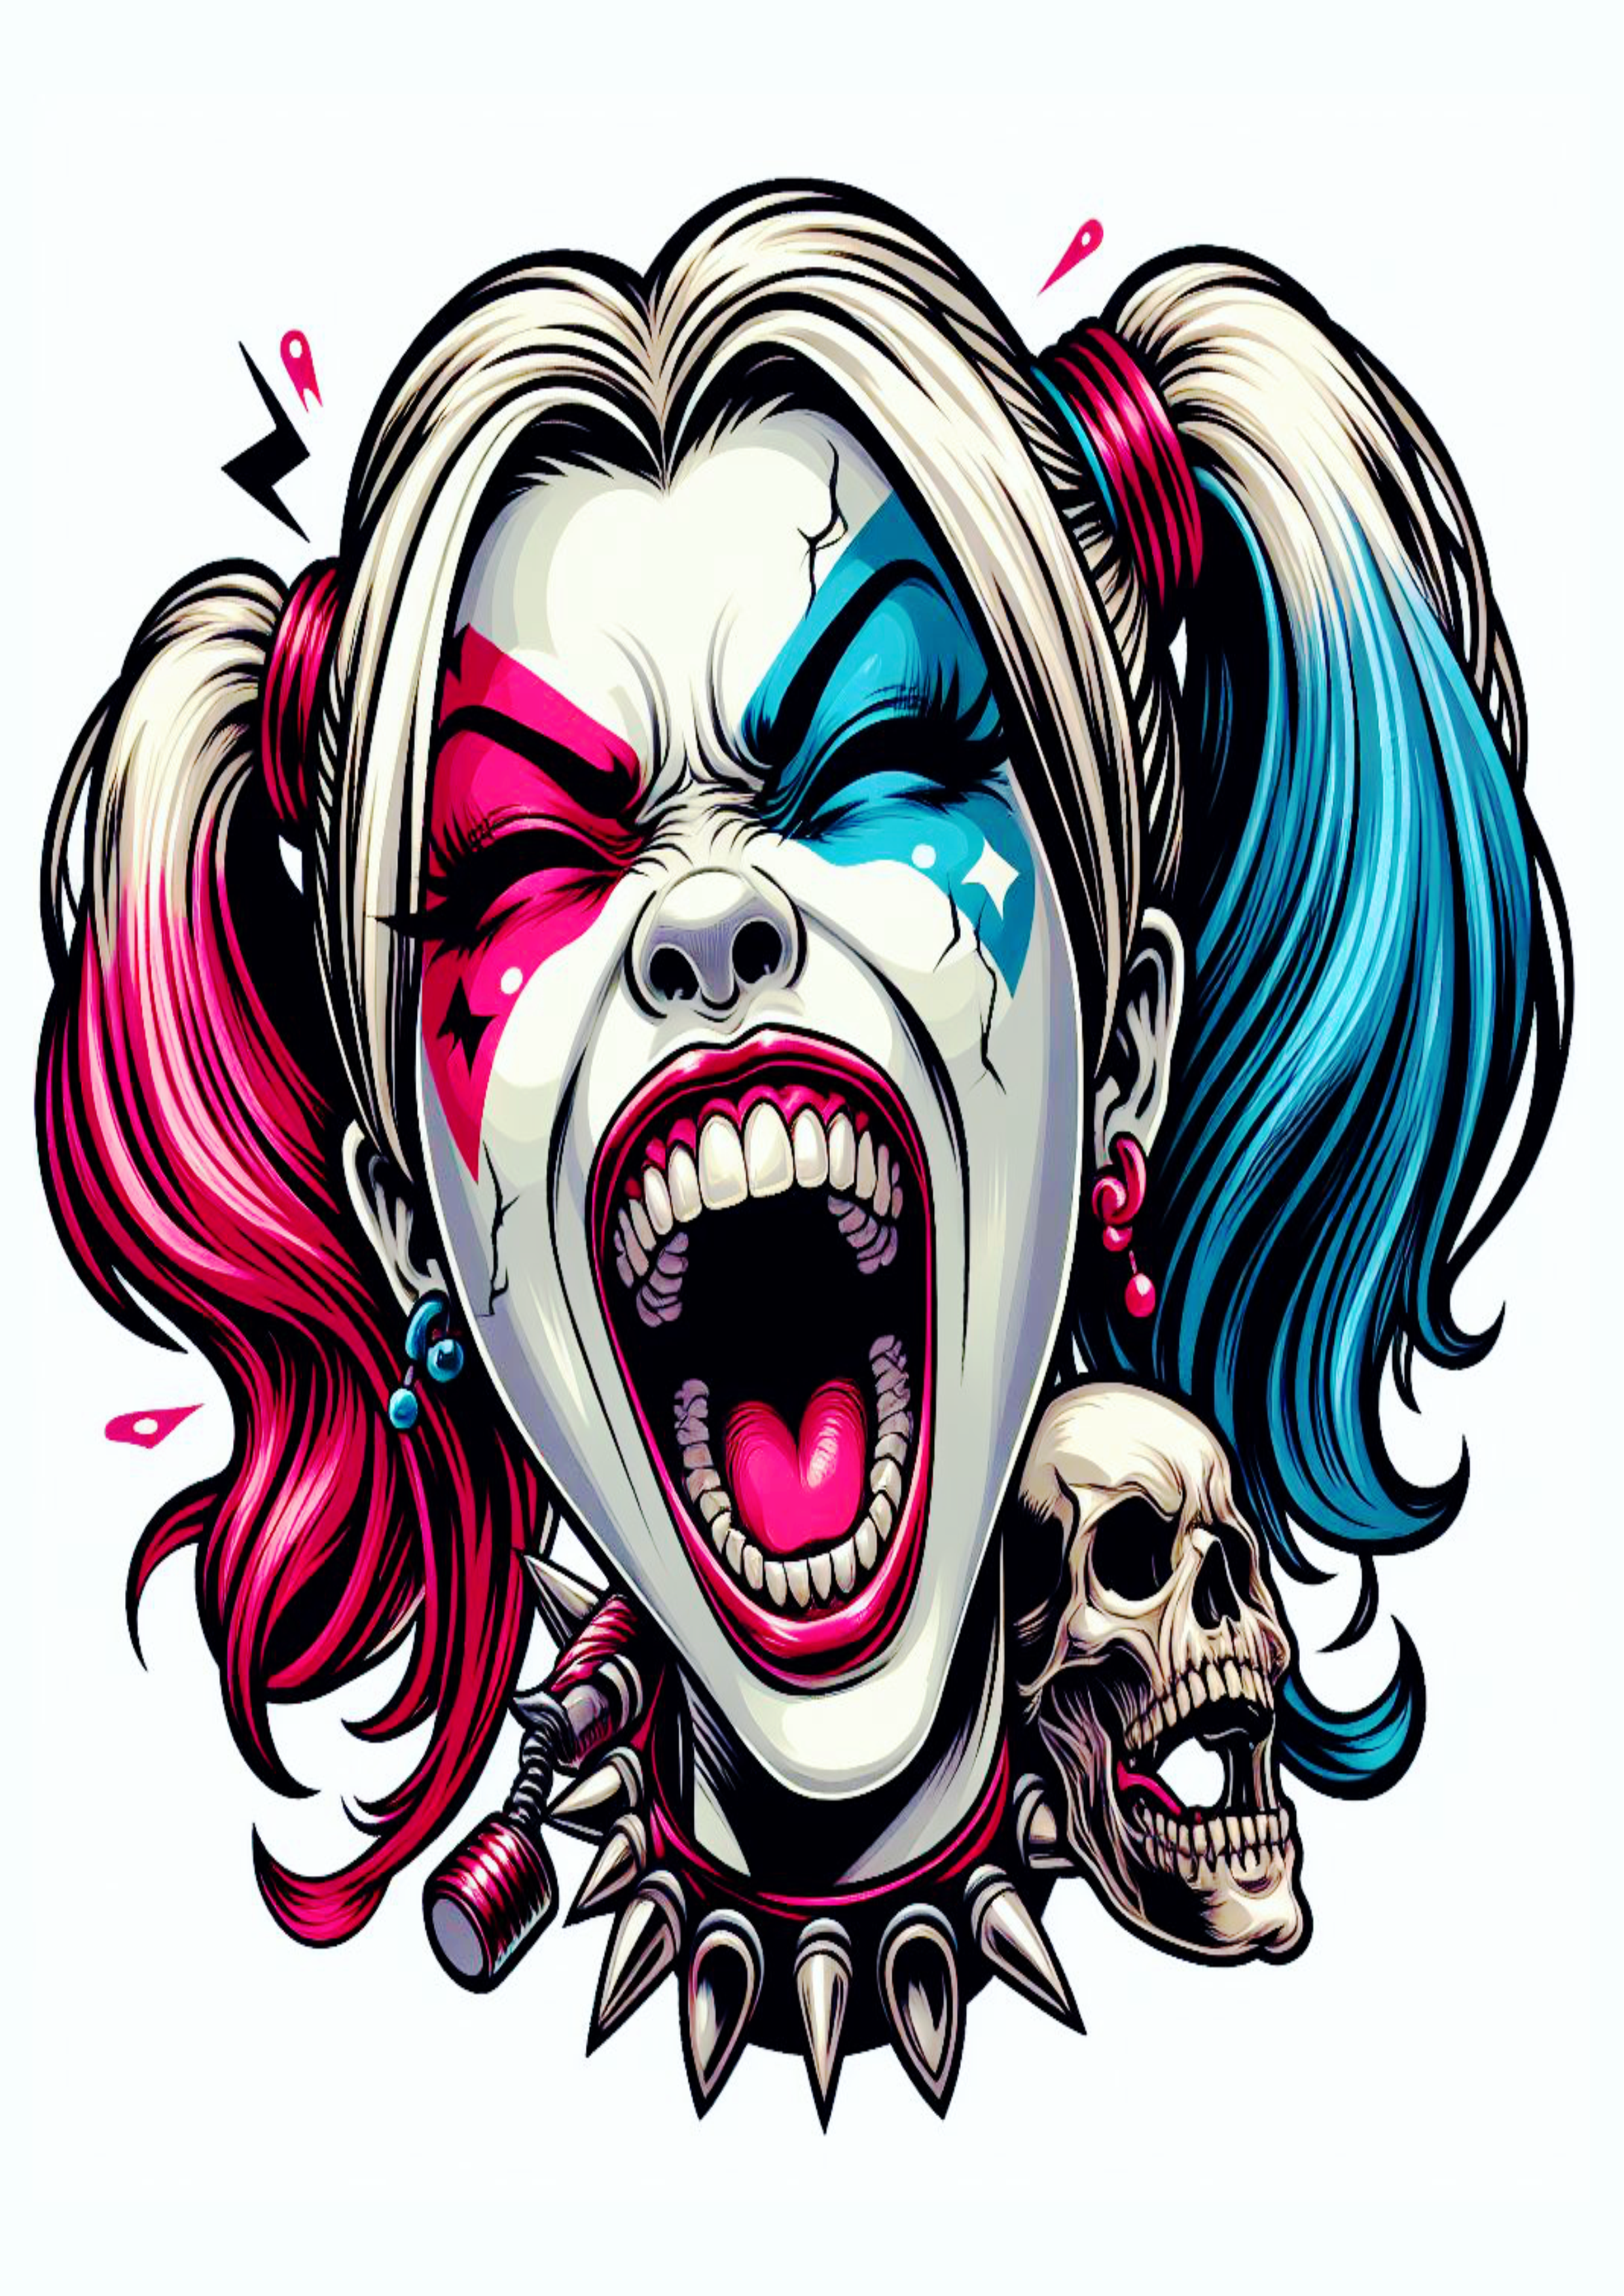 Arlequina gritando desenho colorido para tatuagem Harley Quinn artes visuais png